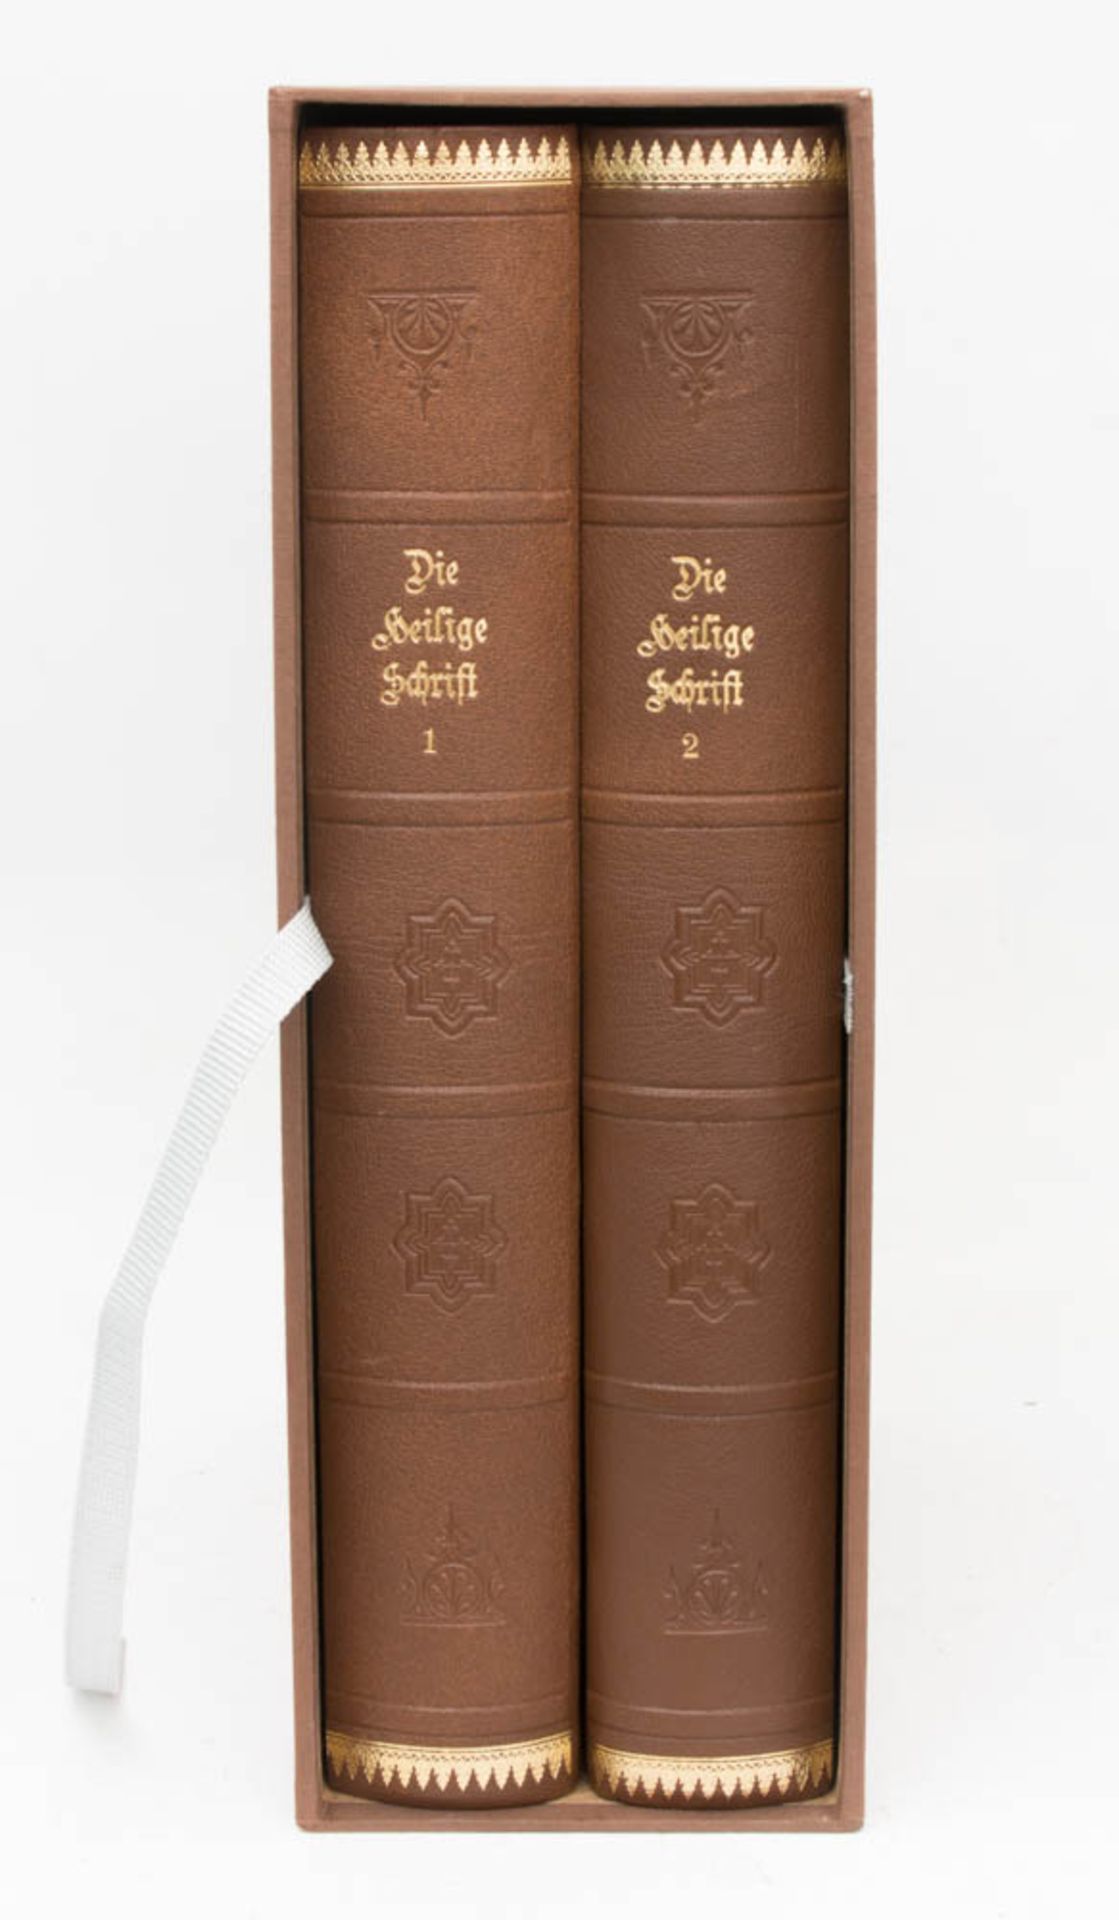 Die Heilige Schrift des Alten und Neuen Testaments, Zwei Bände, Gustave Doré, Stuttgart.Die